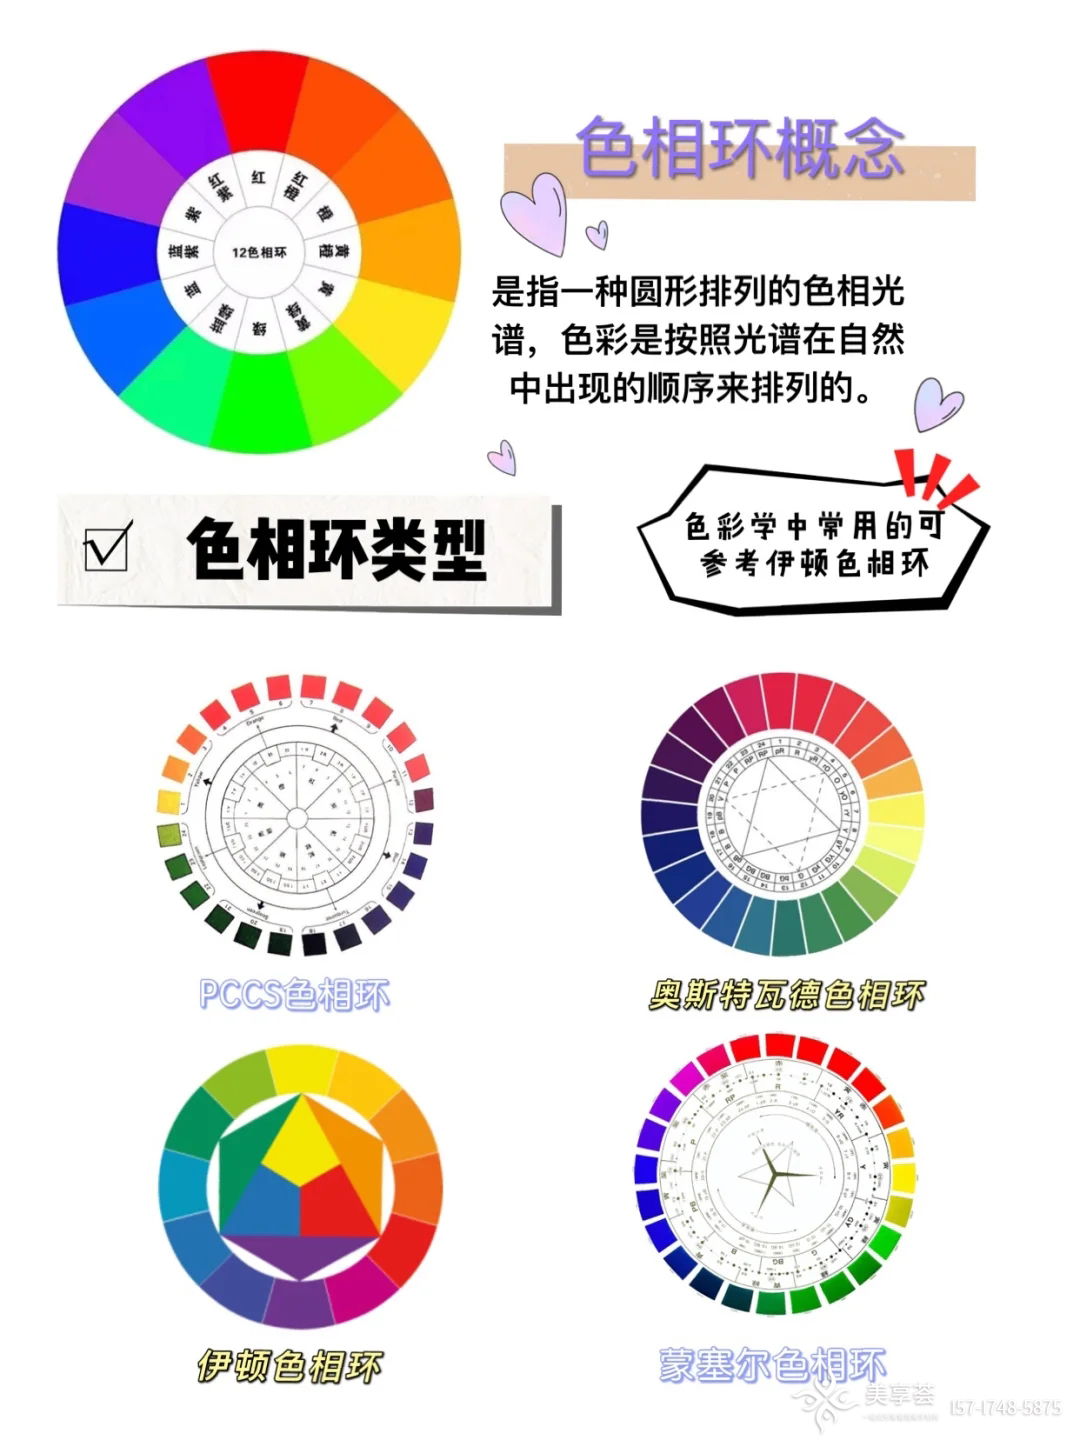 色相环的概念:是指一种圆形排列的色相光谱,色彩是按照光谱在自然中